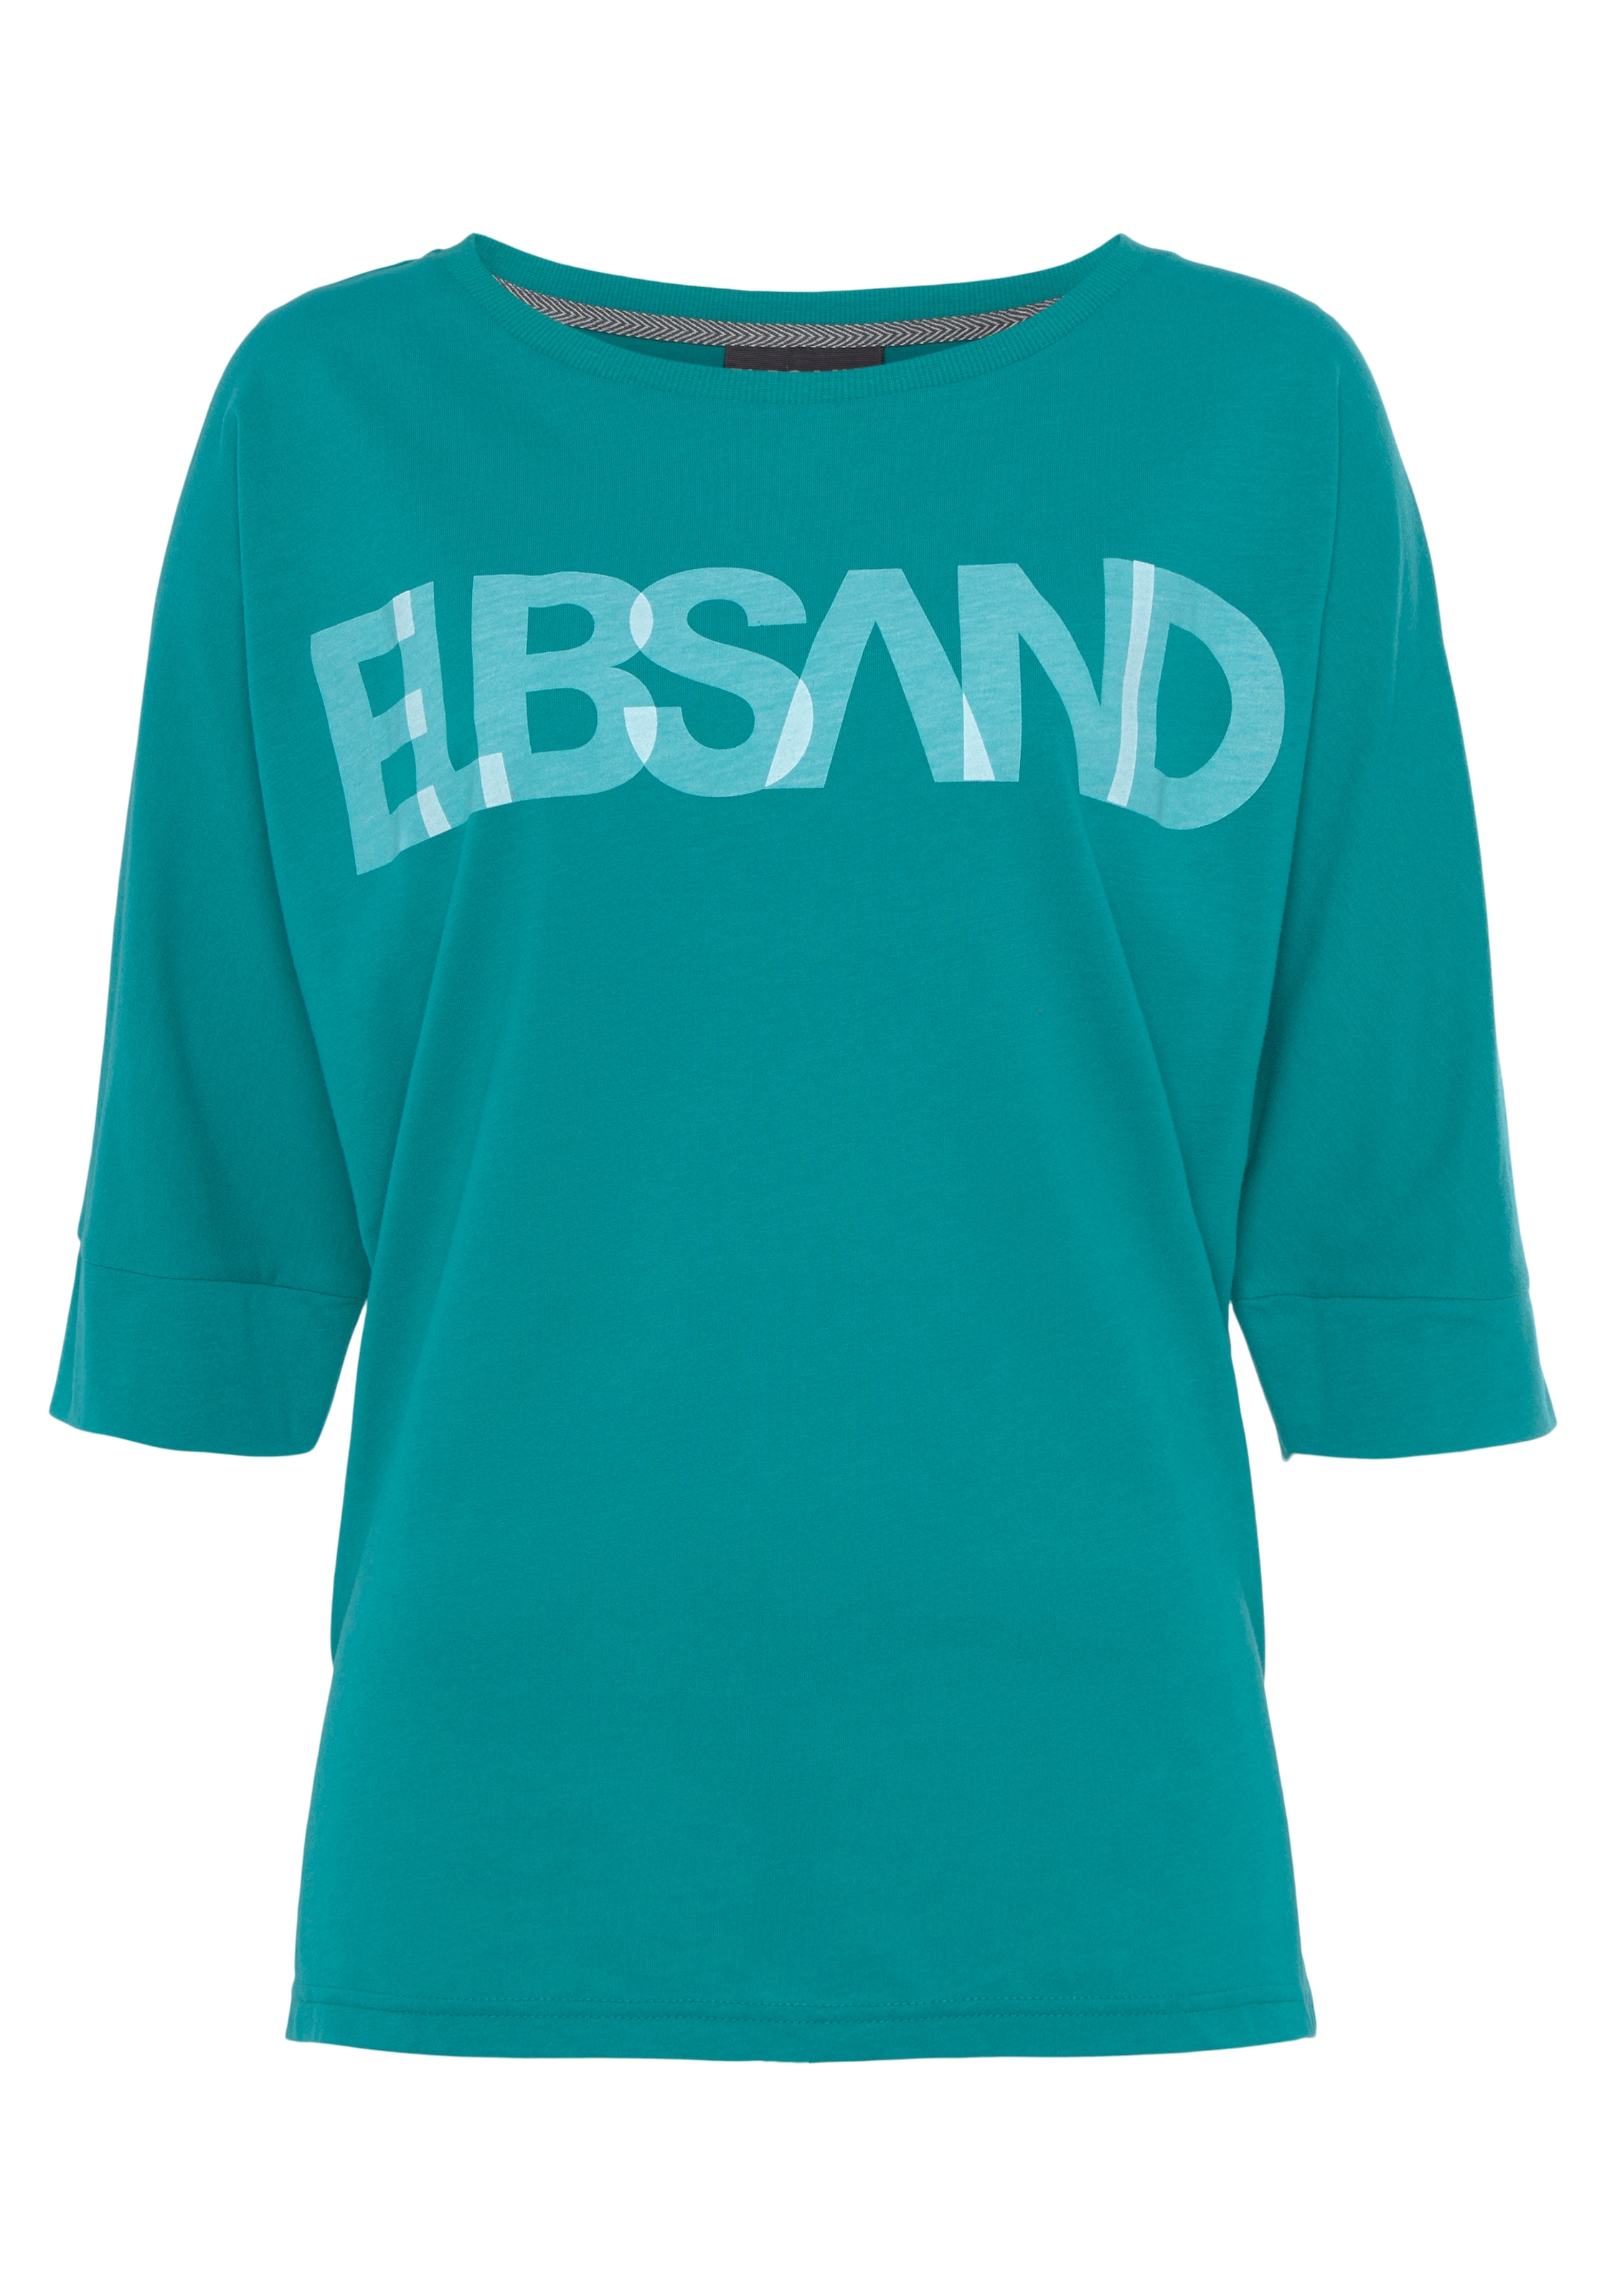 Elbsand 3/4-Arm-Shirt, mit Logodruck, Baumwoll-Mix, lockere Passform  bestellen im OTTO Online Shop